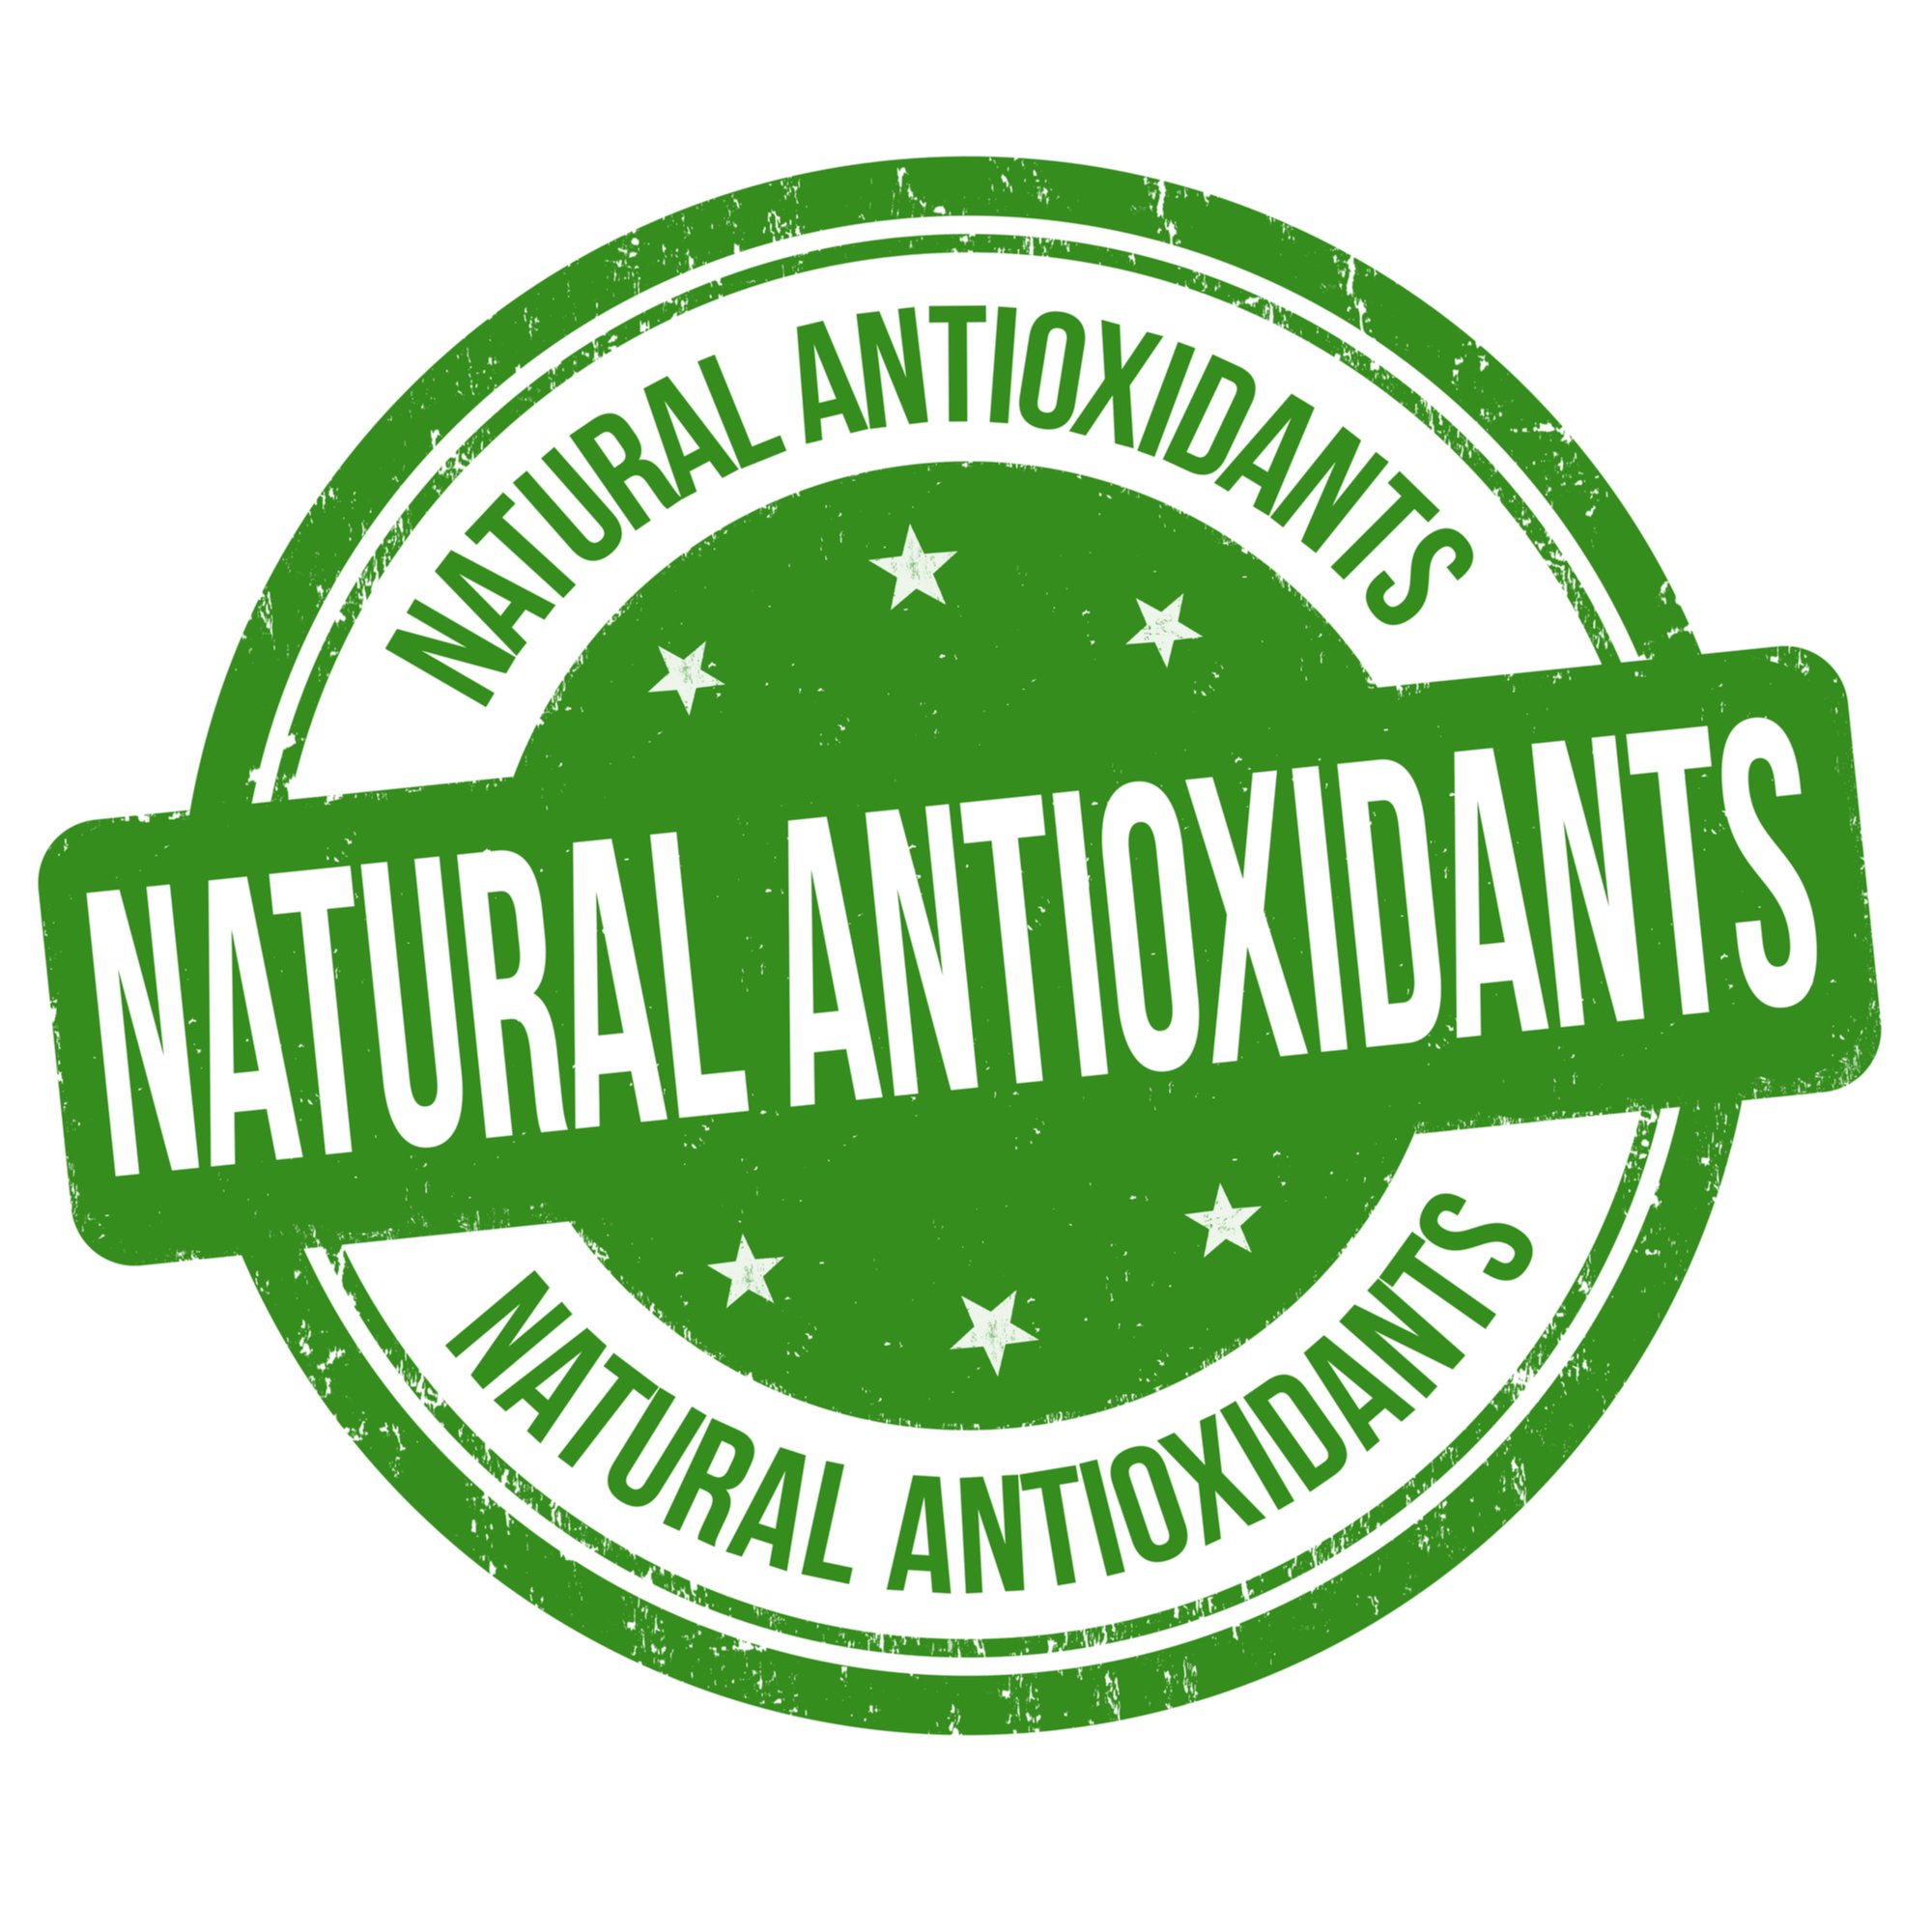 Werking antioxidanten bij paarden